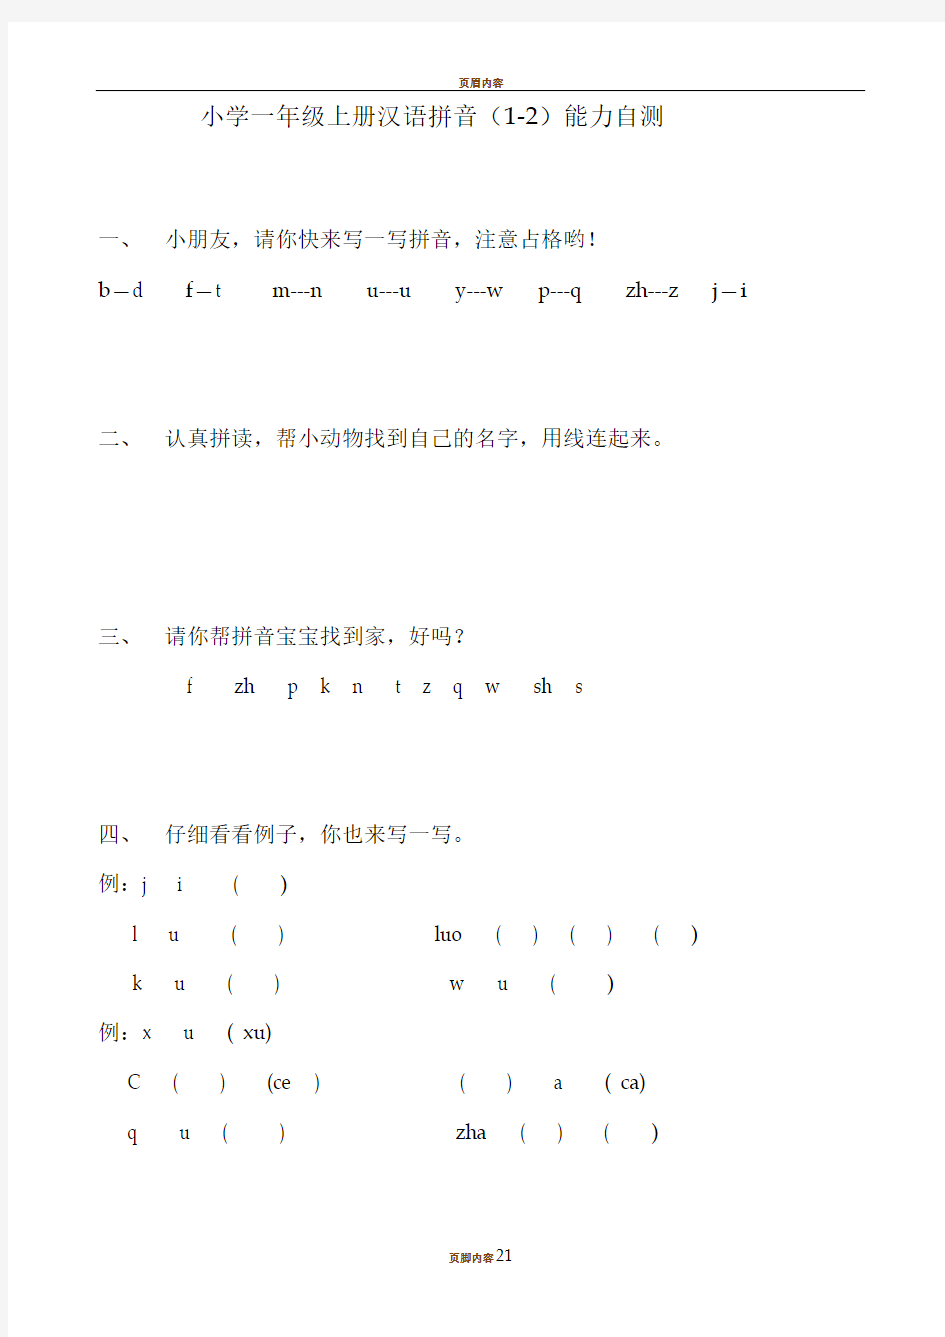 小学一年级上册汉语拼音